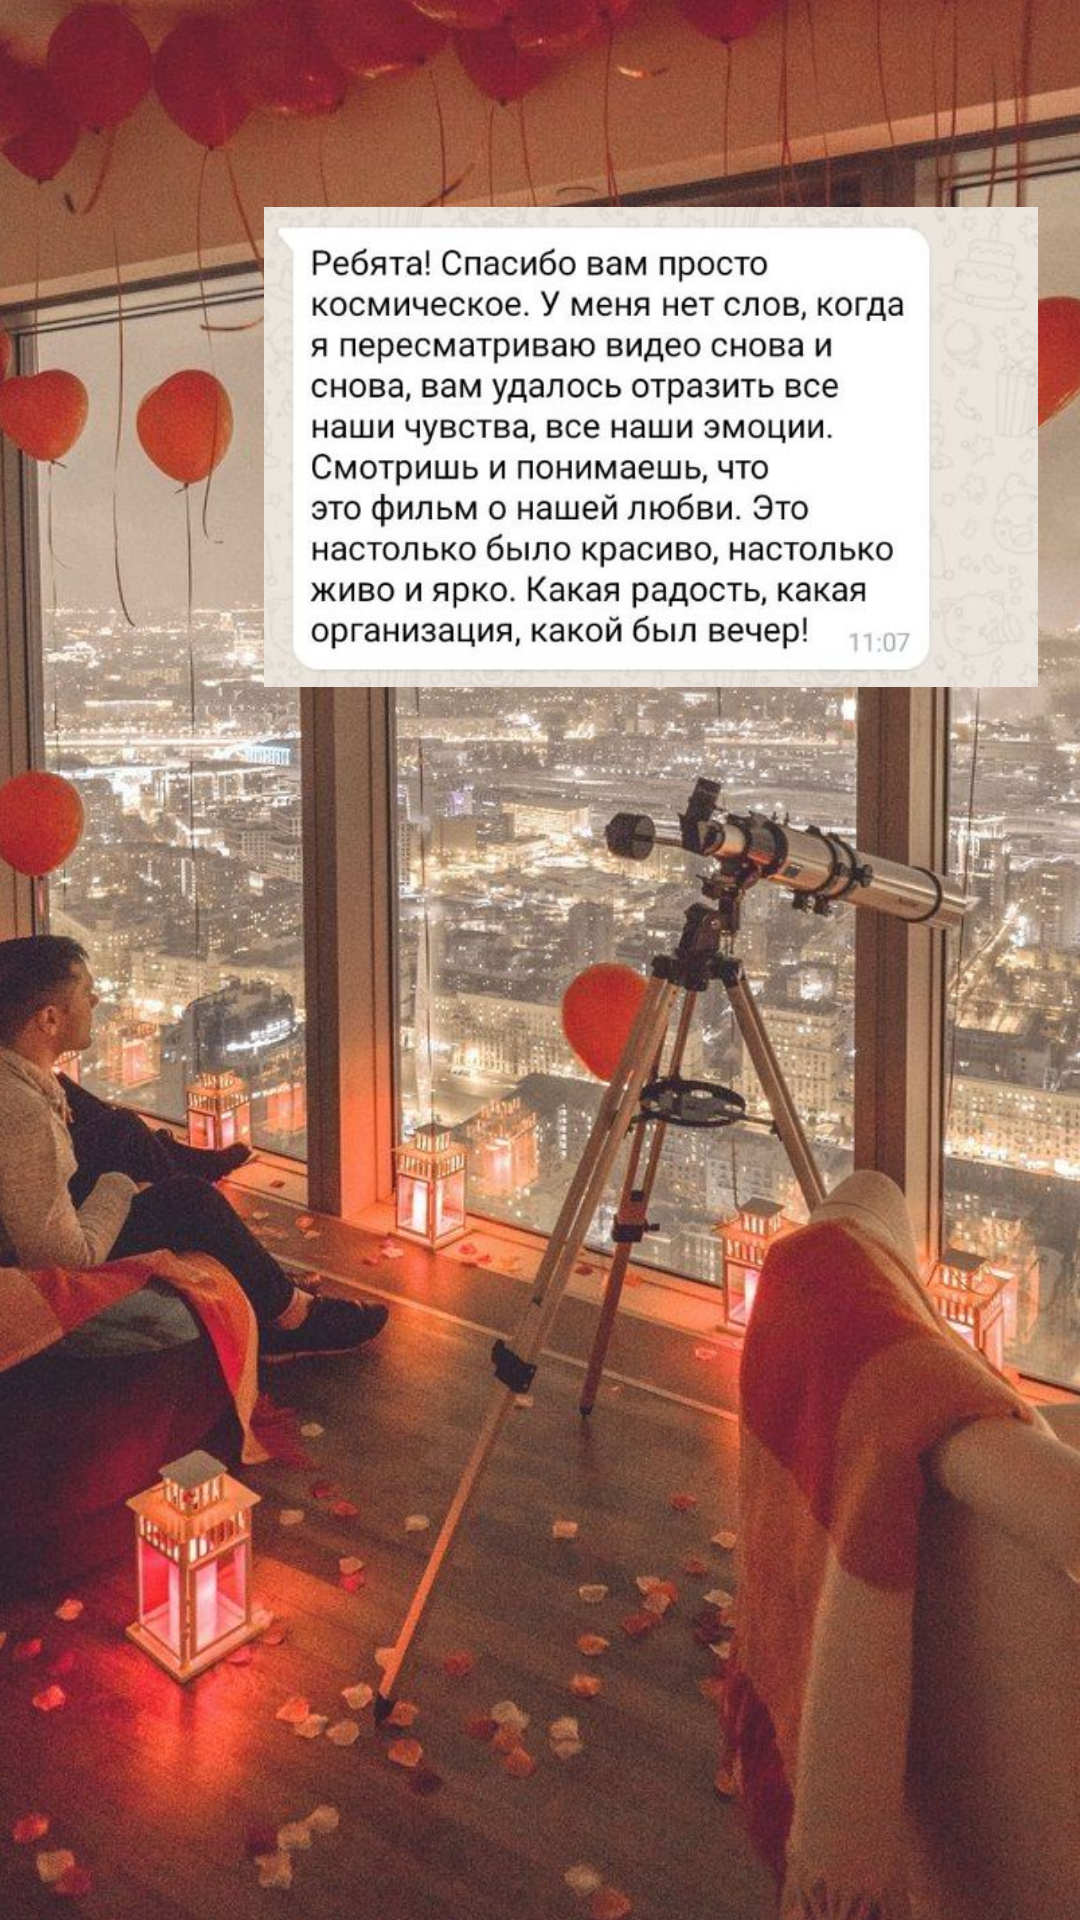 Организация предложения руки и сердца в Санкт-Петербурге
от компании Pandaevent